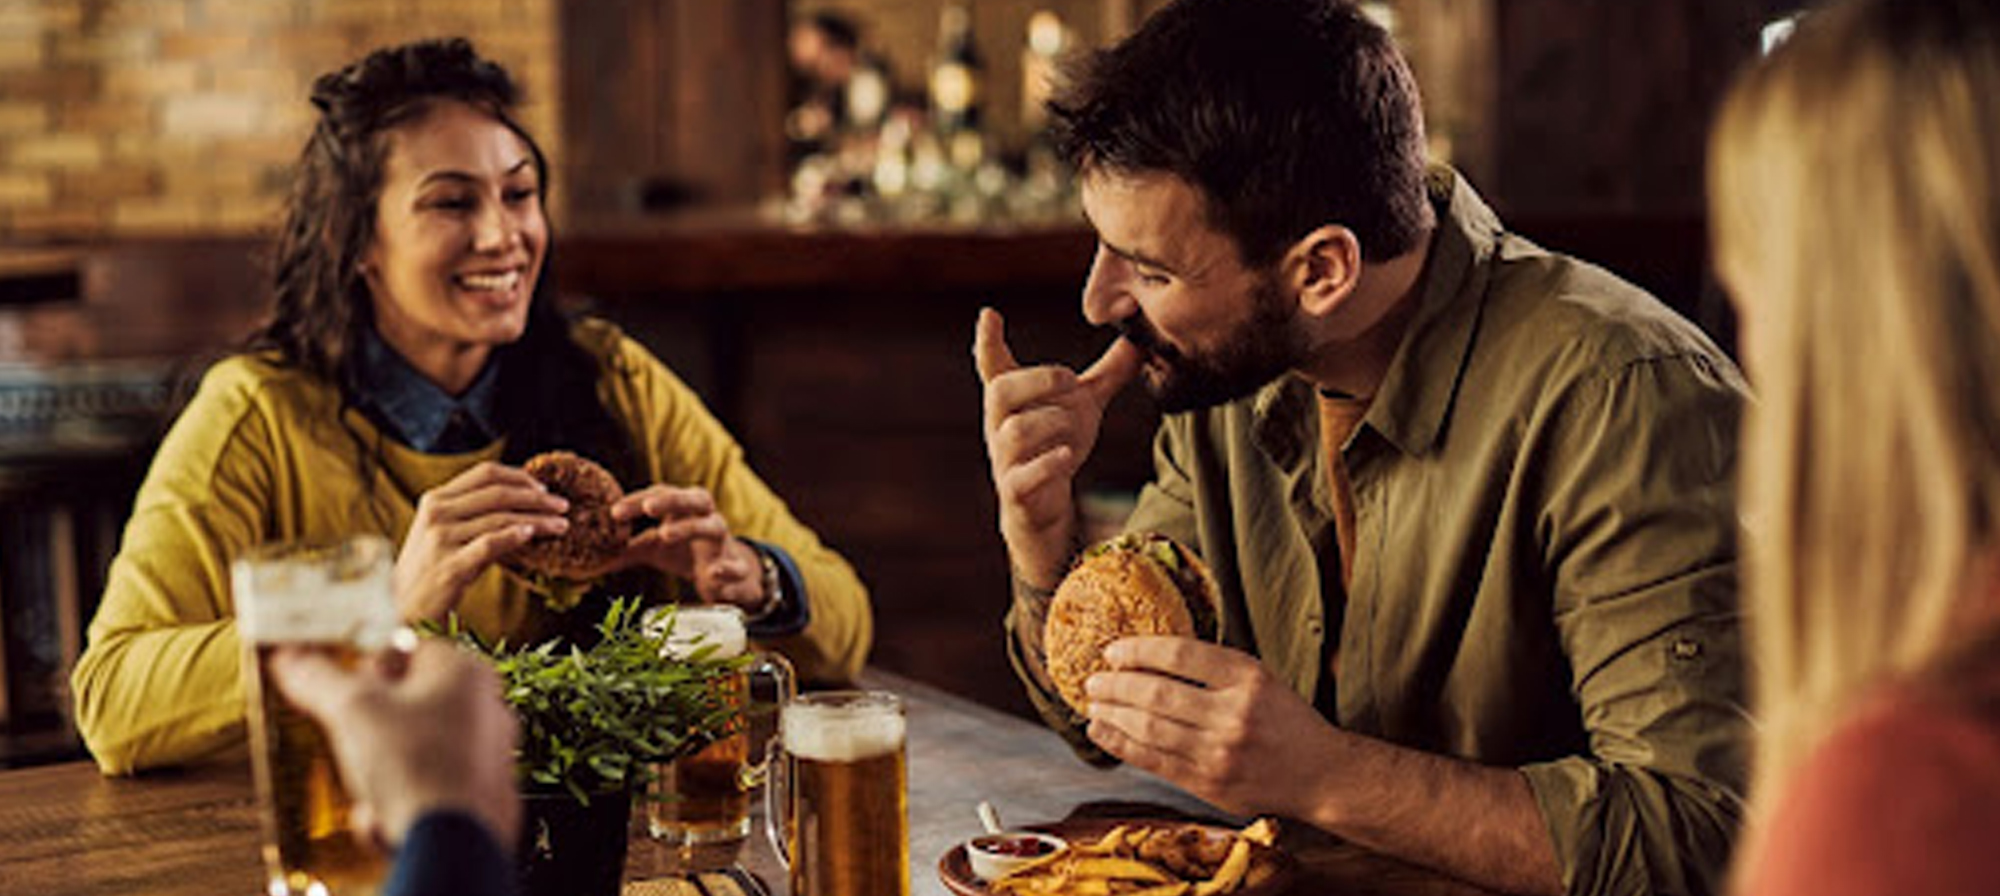 couple eating a hamburger at a restaurant